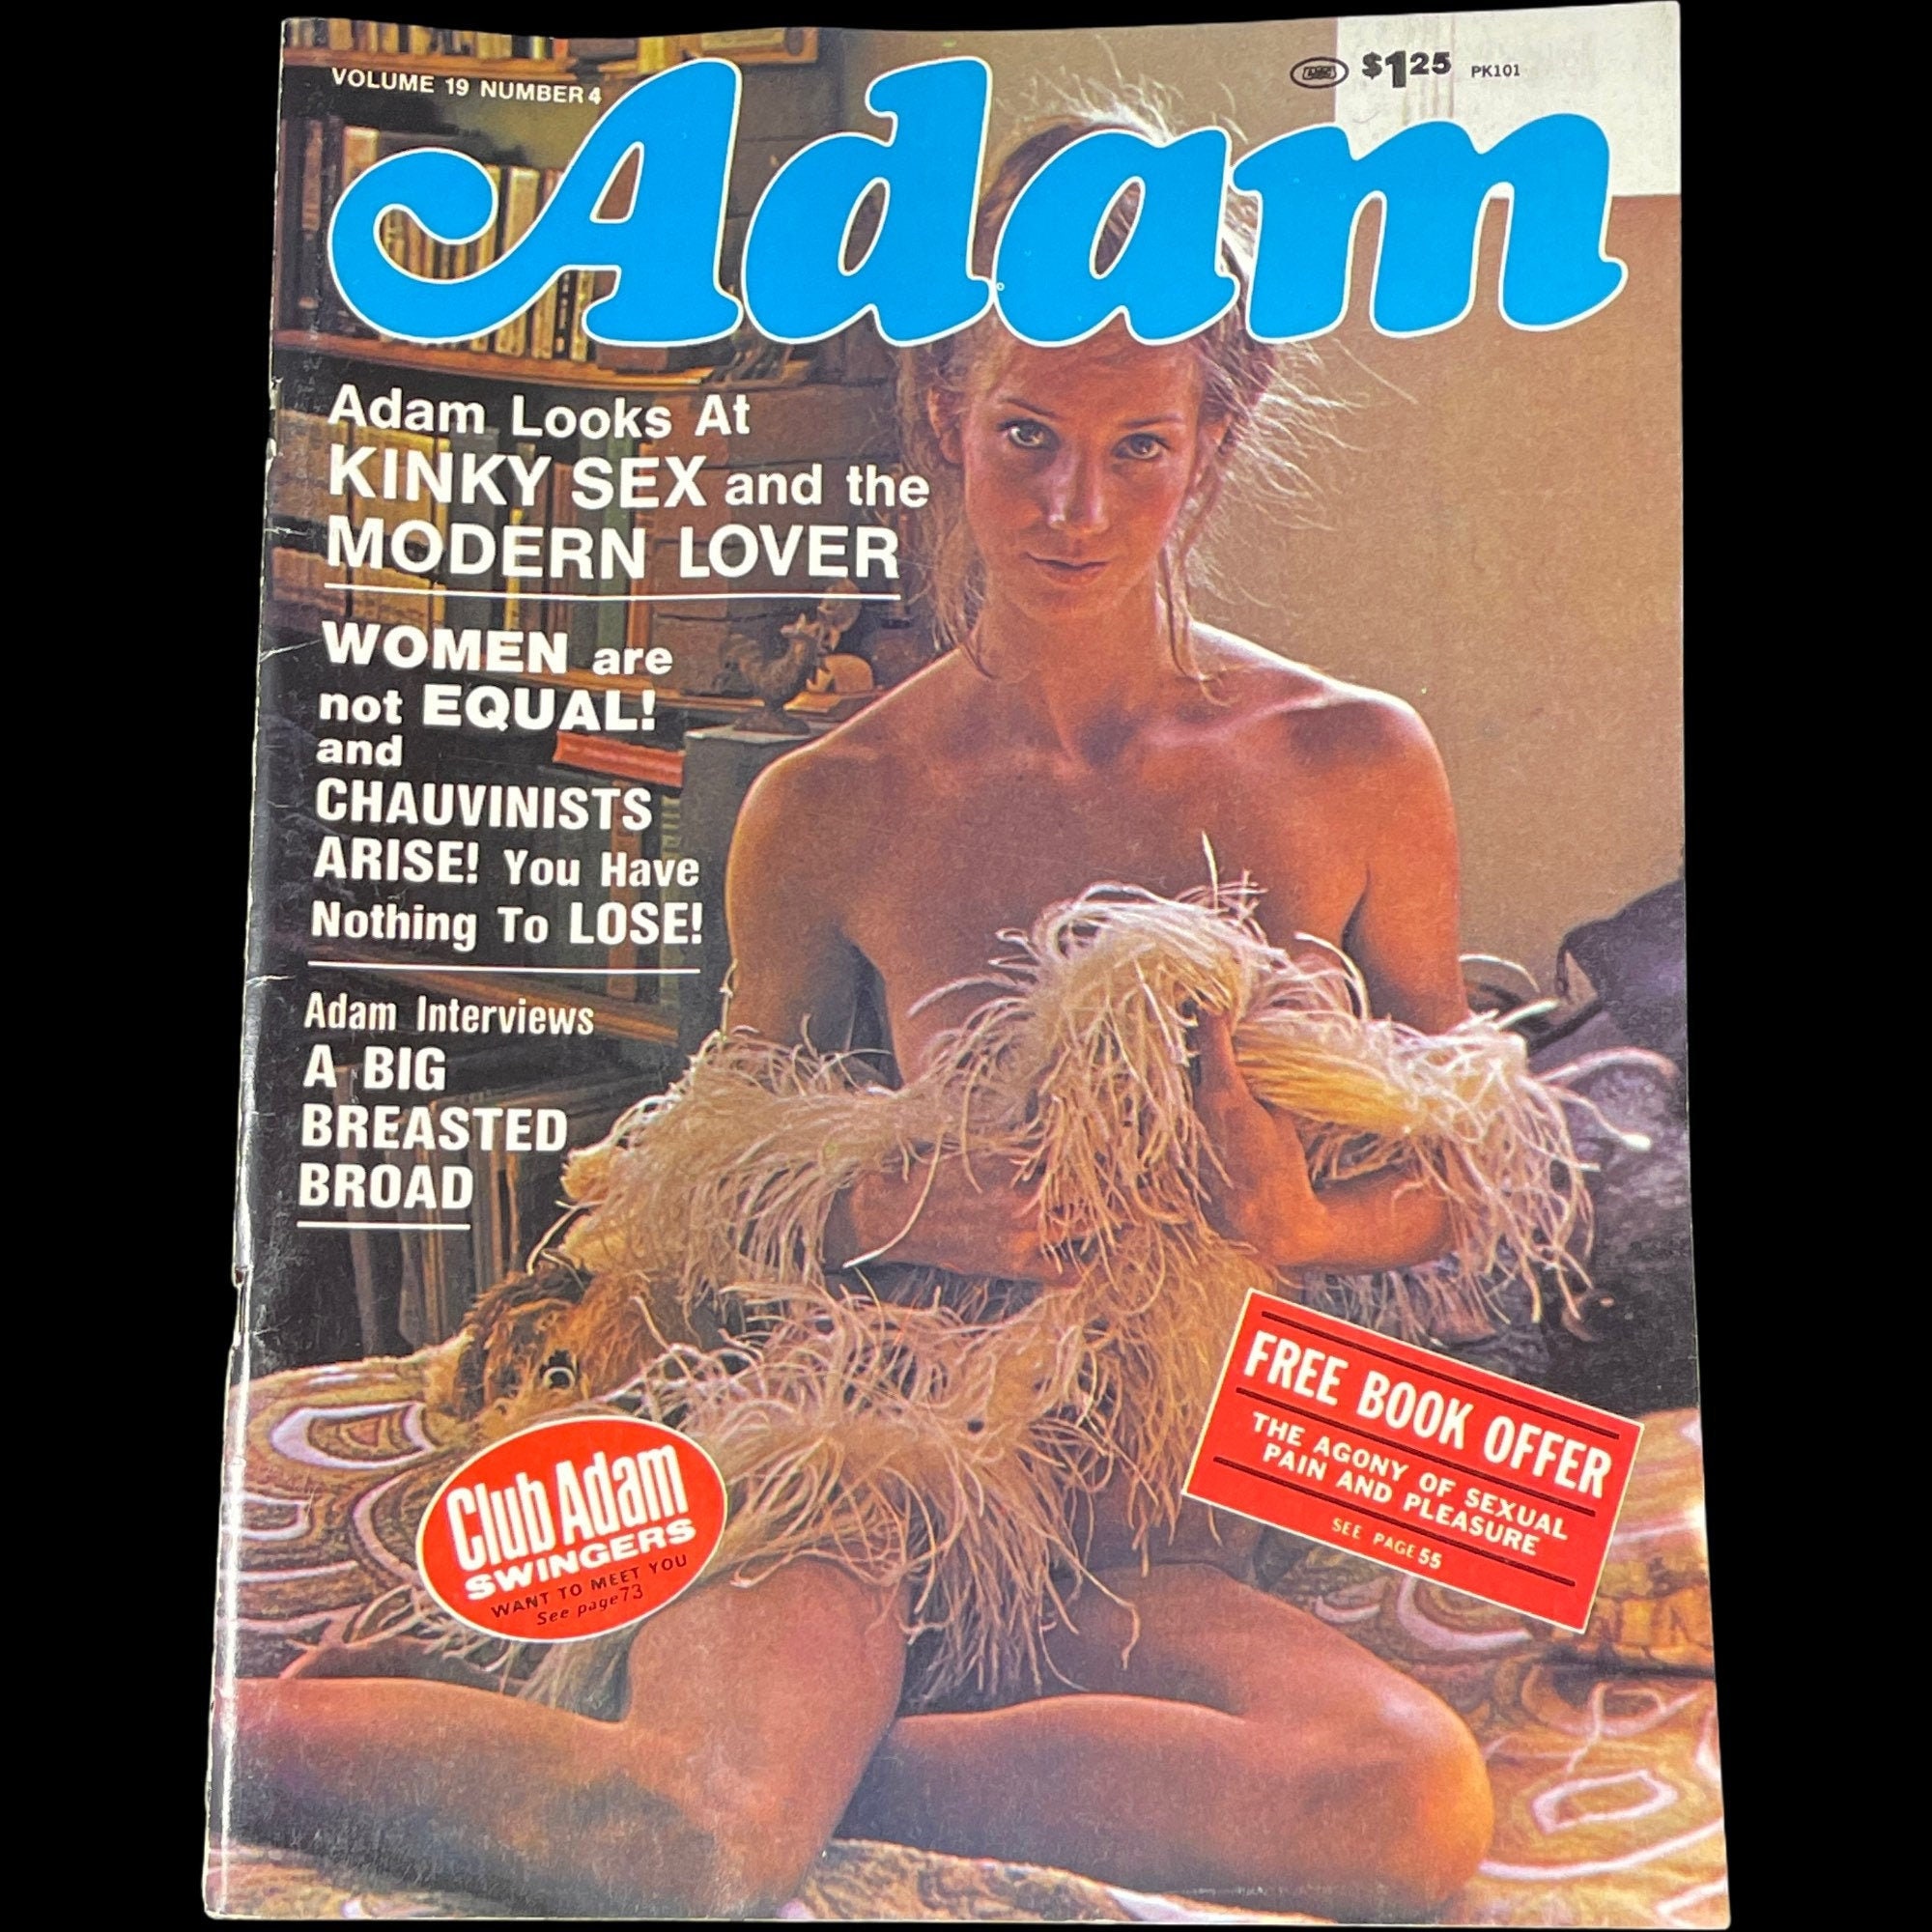 Adam Magazine a Volume 19 Number 4 1975 image